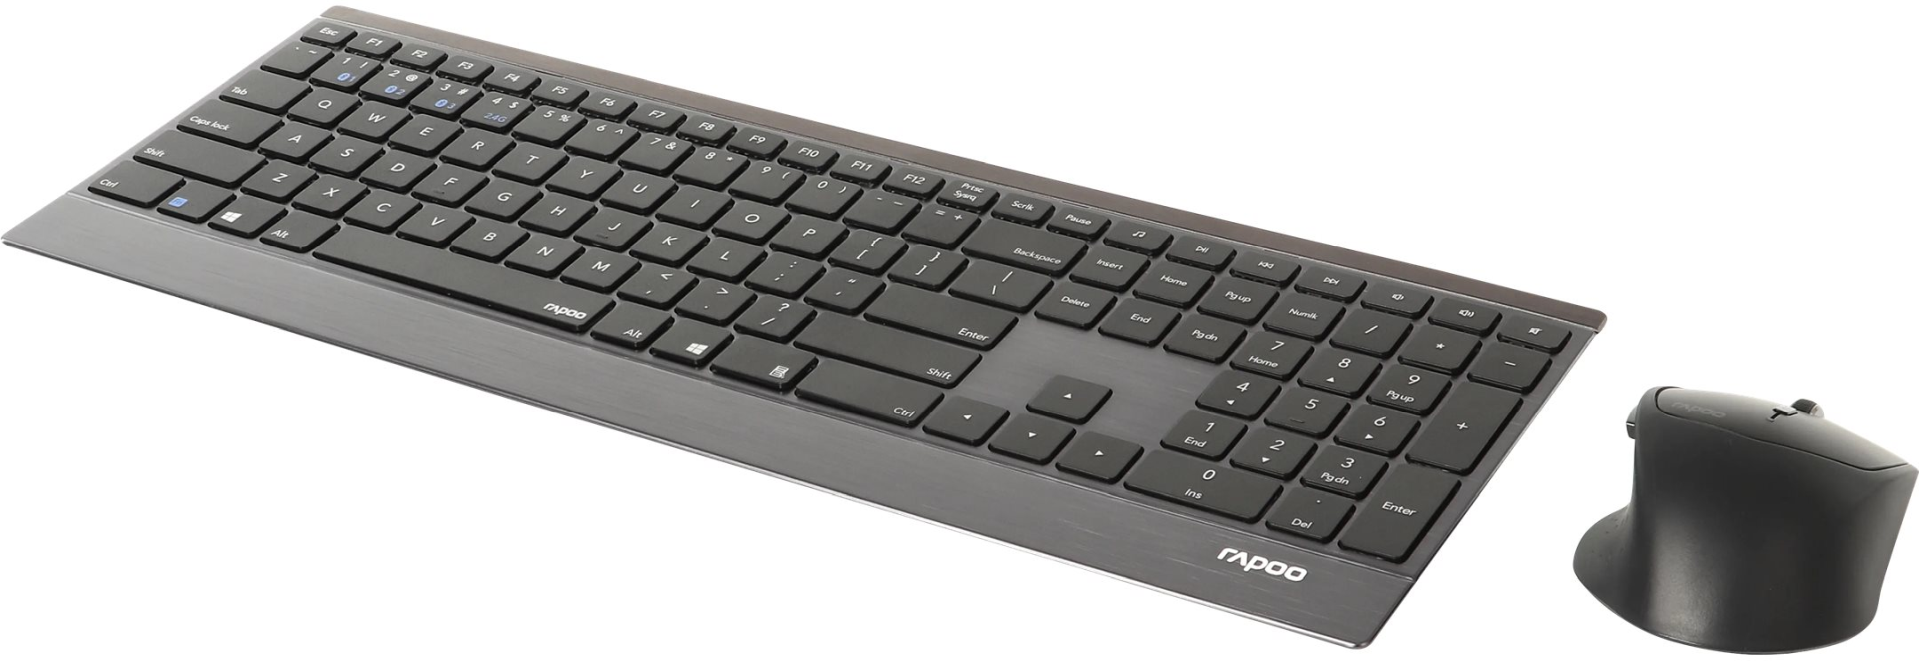 6940056188885 RAPOO 9500M Multi-Mode Trådløs Keyboard/Mus Nordisk Layout,  Computer & IT,Mus & tastaturer,Tastaturer 15000001020 922575